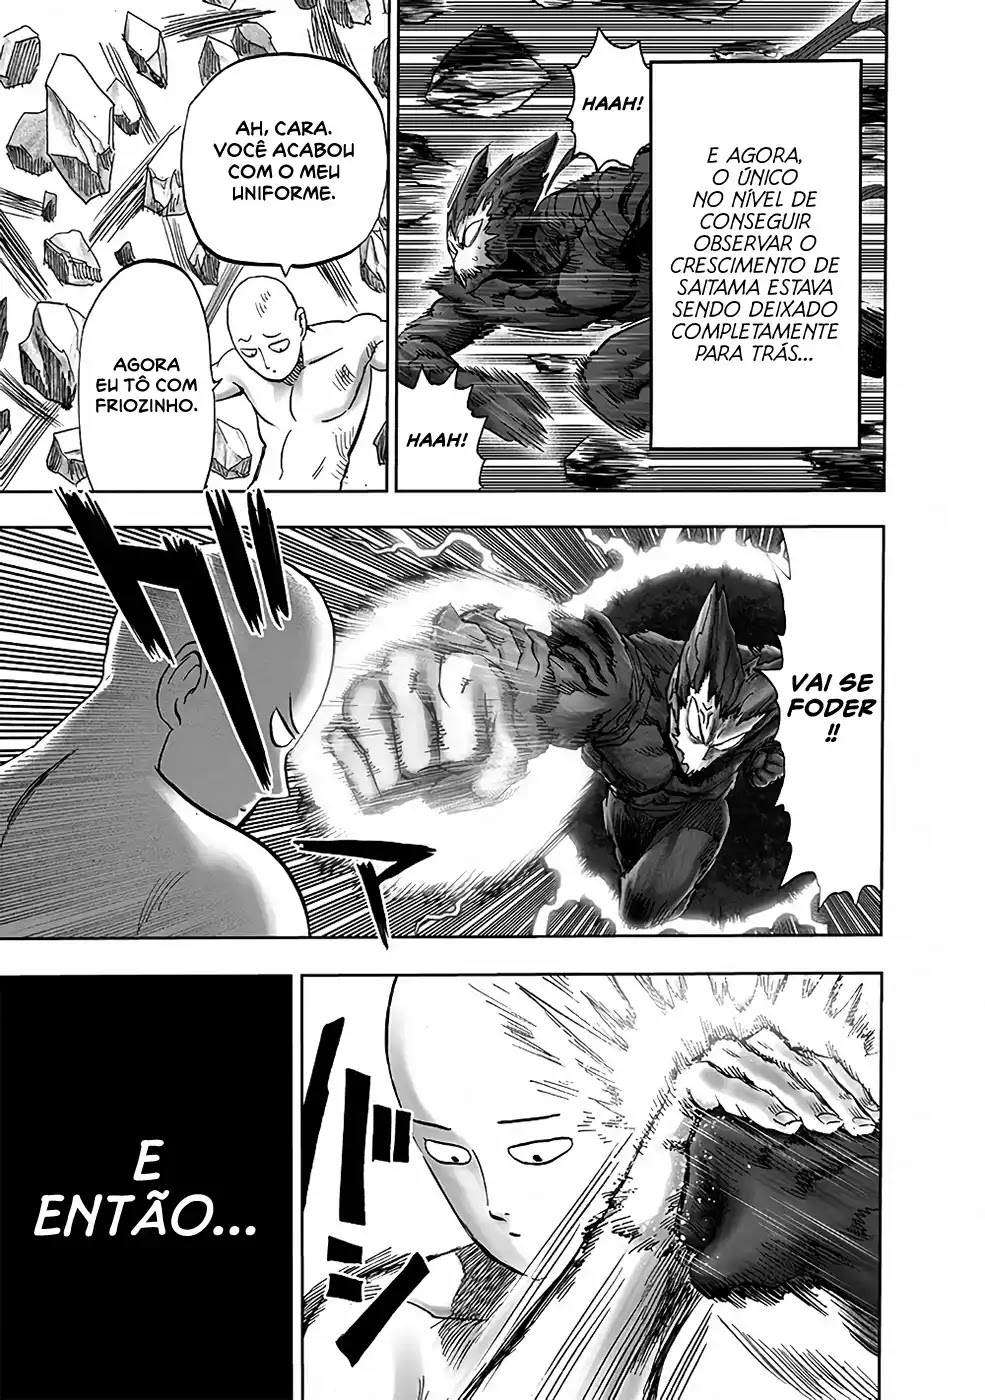 One Punch Man: Saitama Destrói Júpter em Novo Capitulo do Mangá